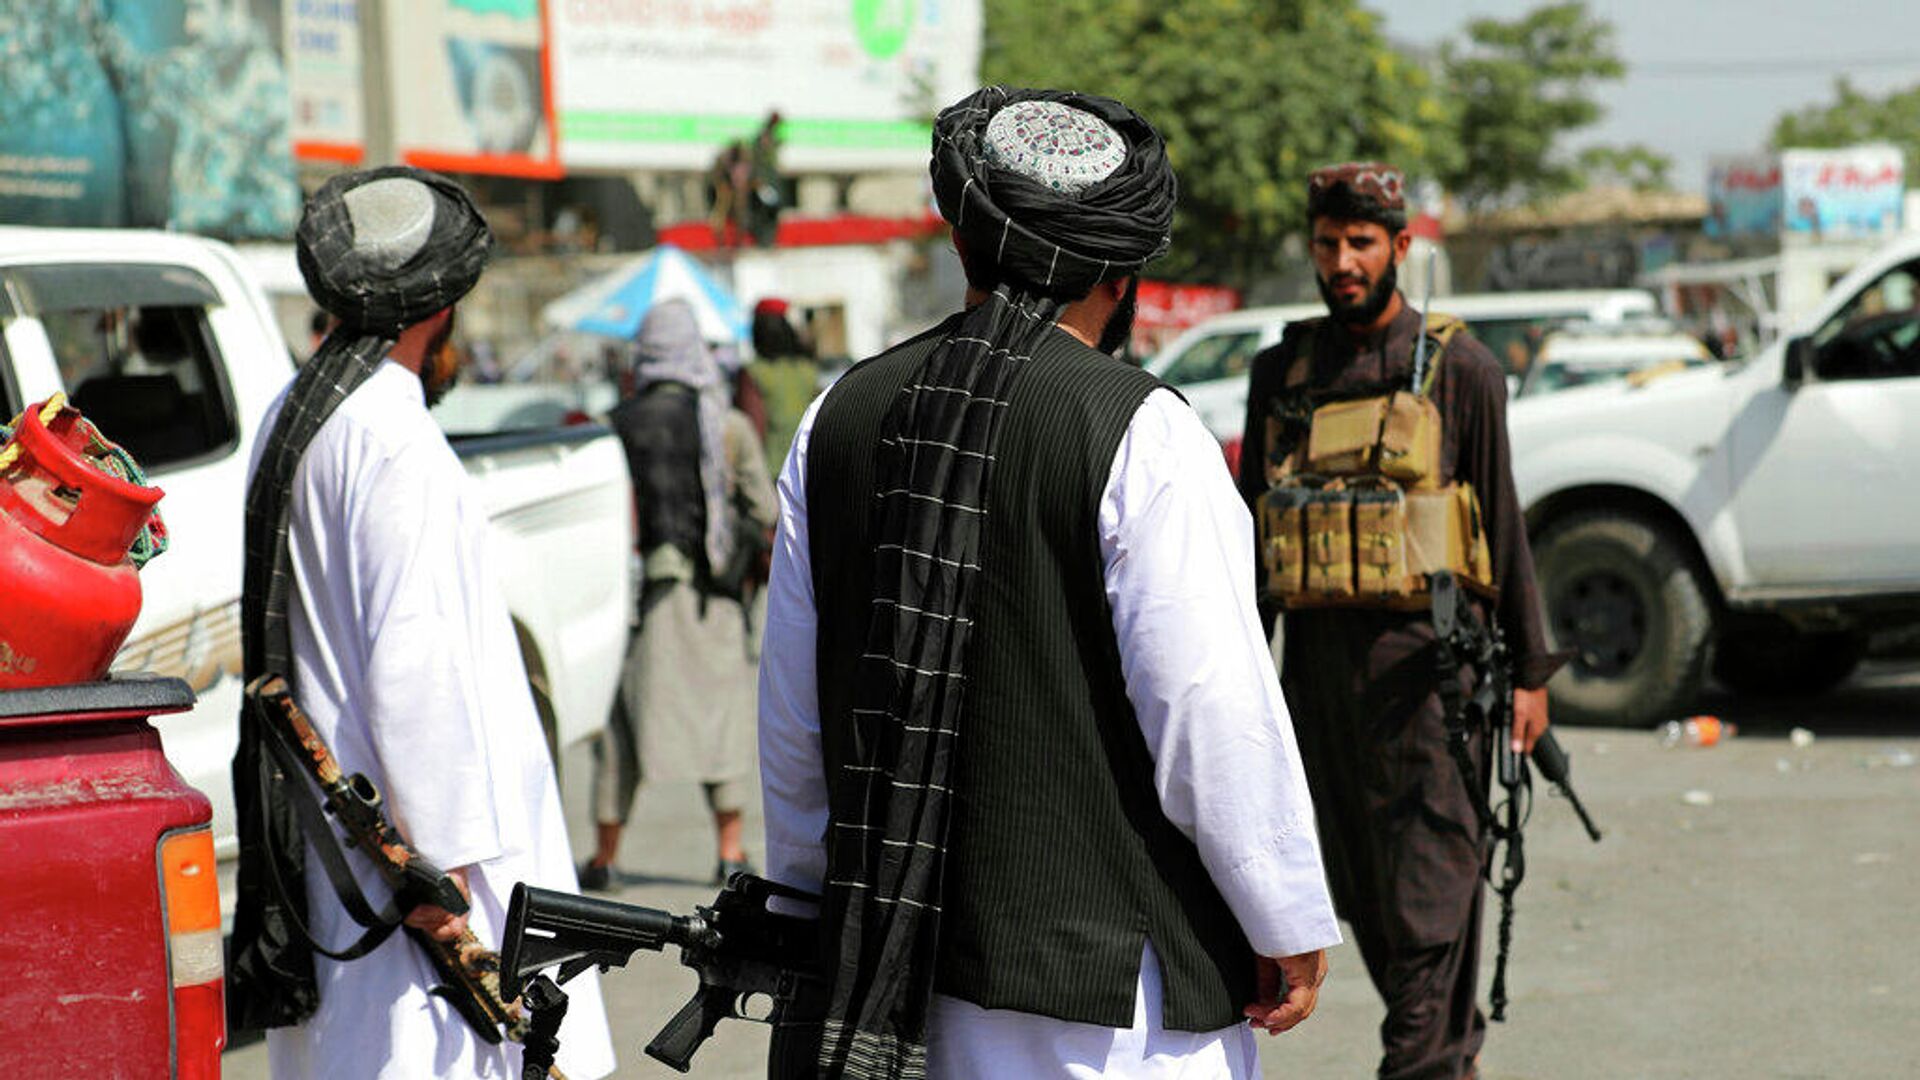 Боевики движения Талибан (признано в России запрещенной террористической организацией) перед международным аэропортом имени Хамида Карзая в Кабуле, Афганистан. 16 августа 2021 года - РИА Новости, 1920, 16.08.2021